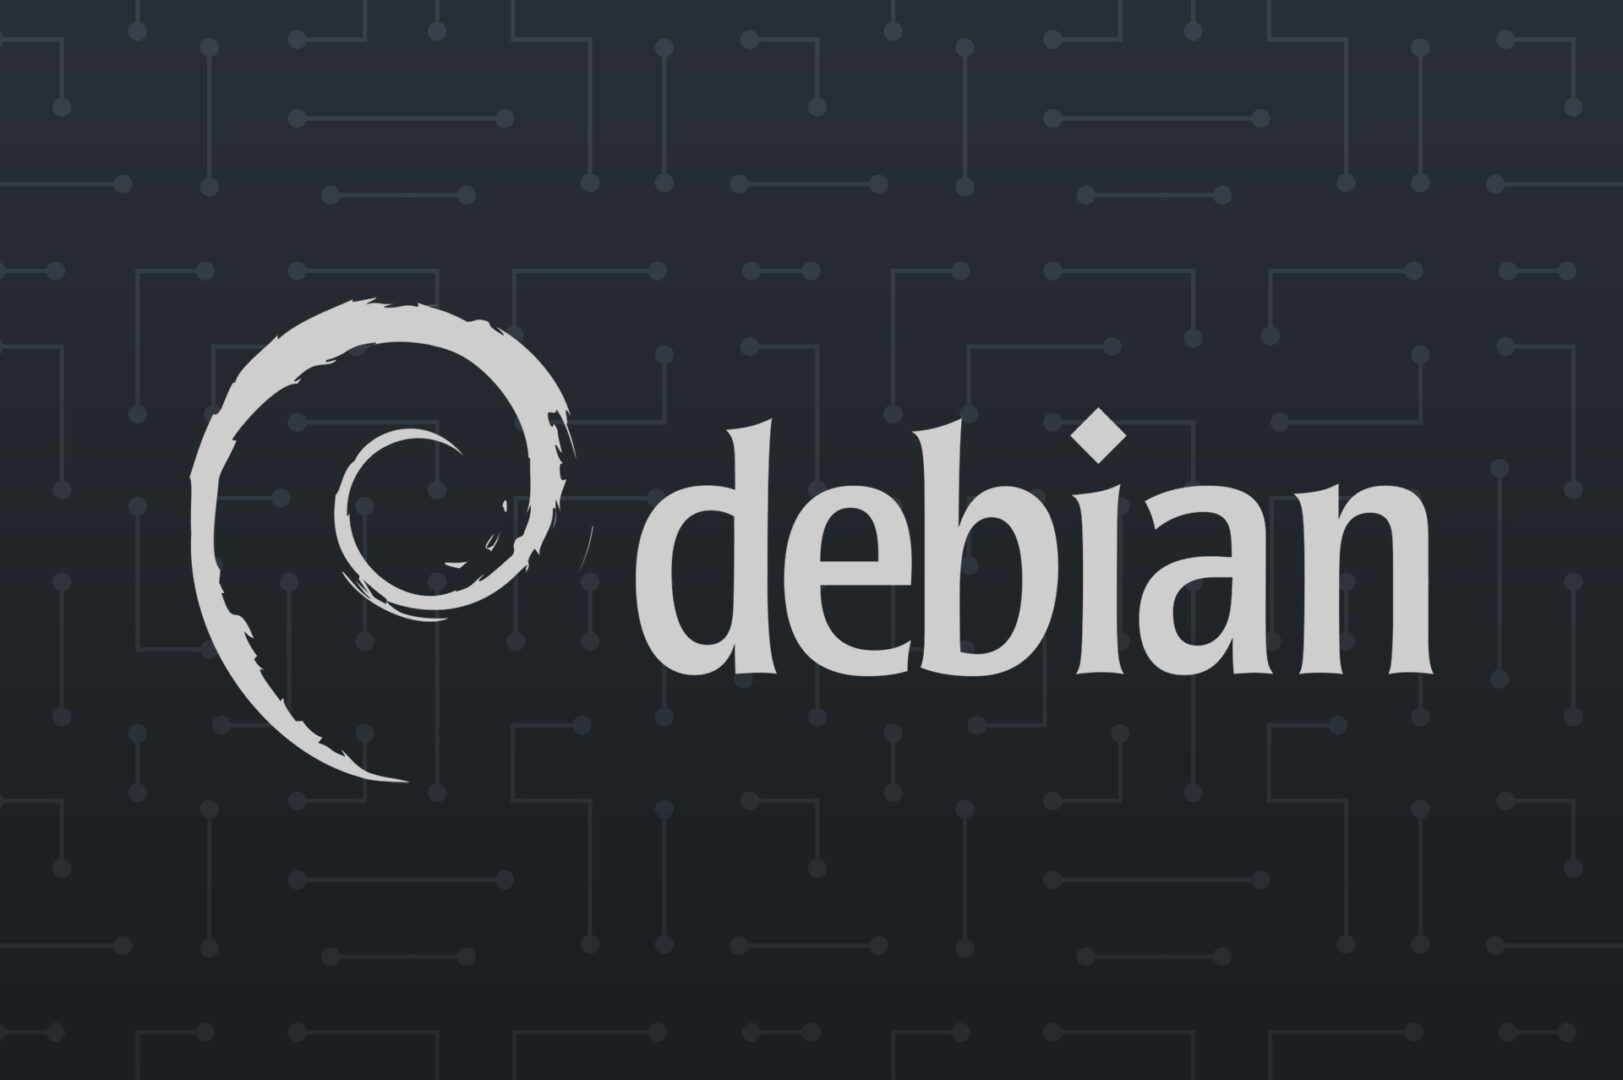 Linux Debian la distribuzione stabile e sicura - 1